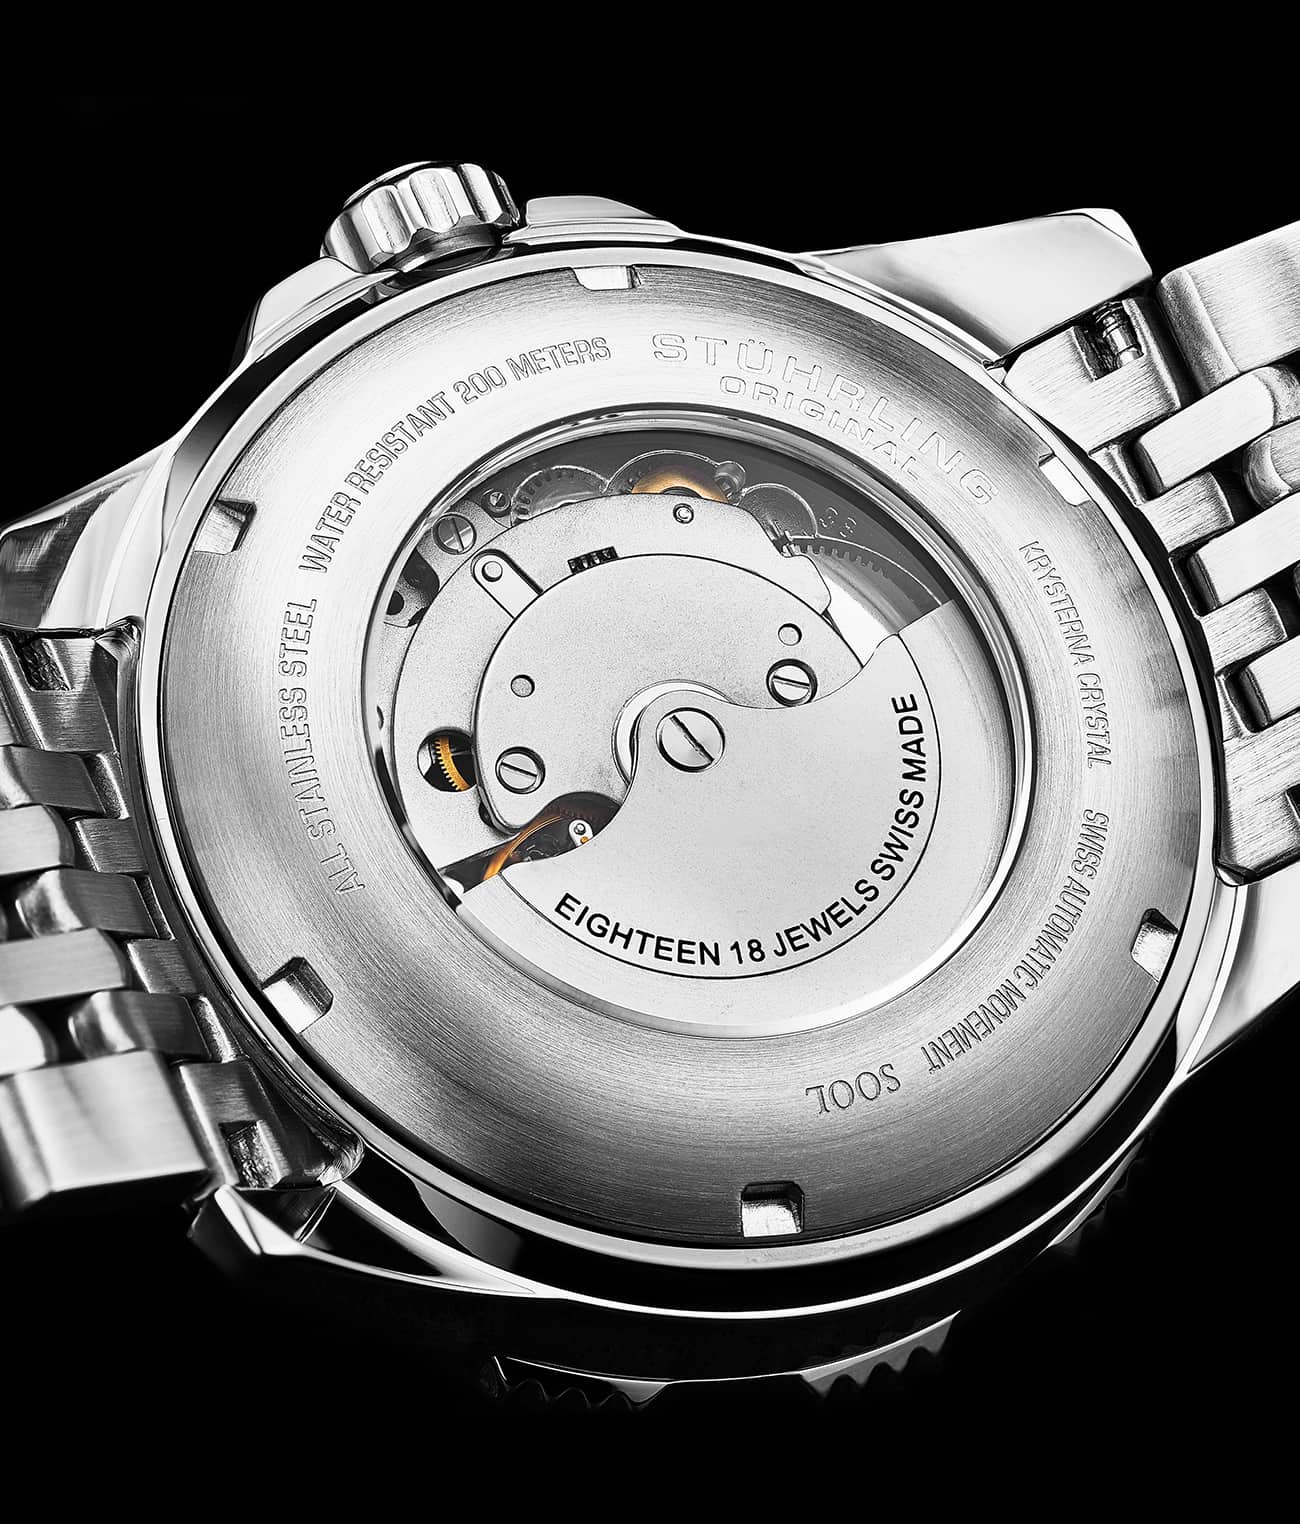 Swiss Automatic Super Luminova Radiance 1006 43mm Watch